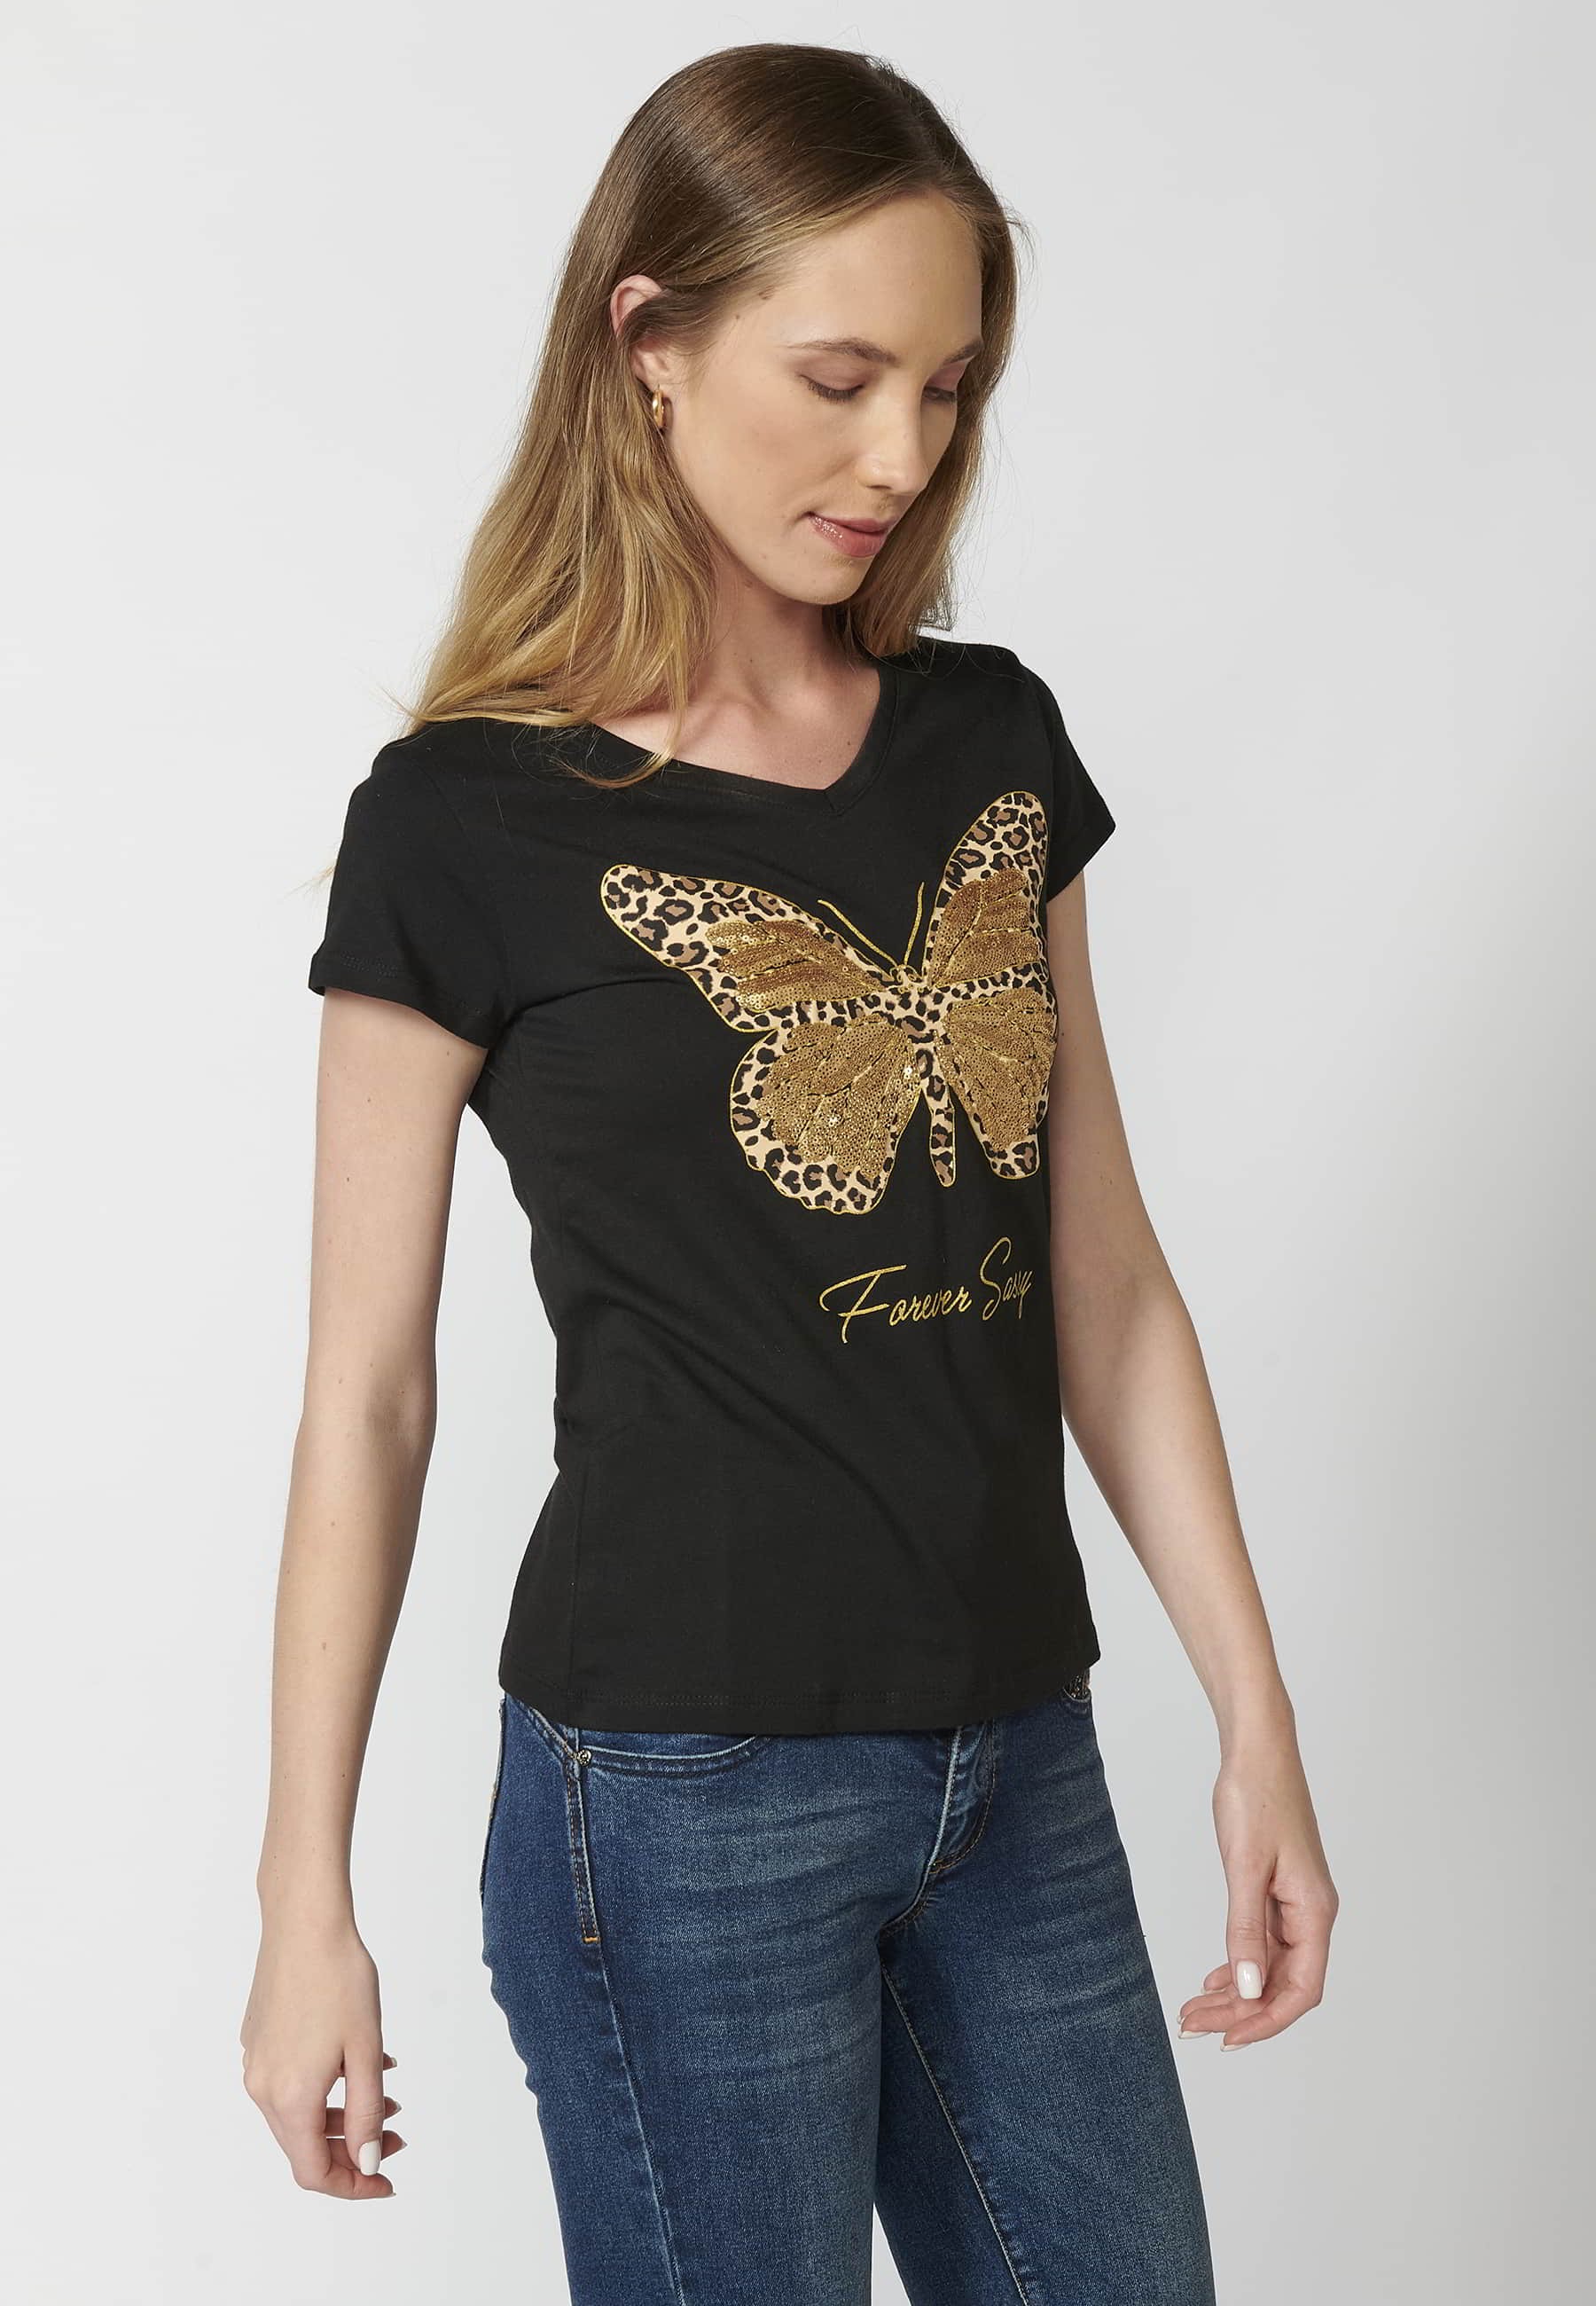 Camiseta de manga corta de algodón cuello redondo estampado frontal mariposa color negro para mujer 1